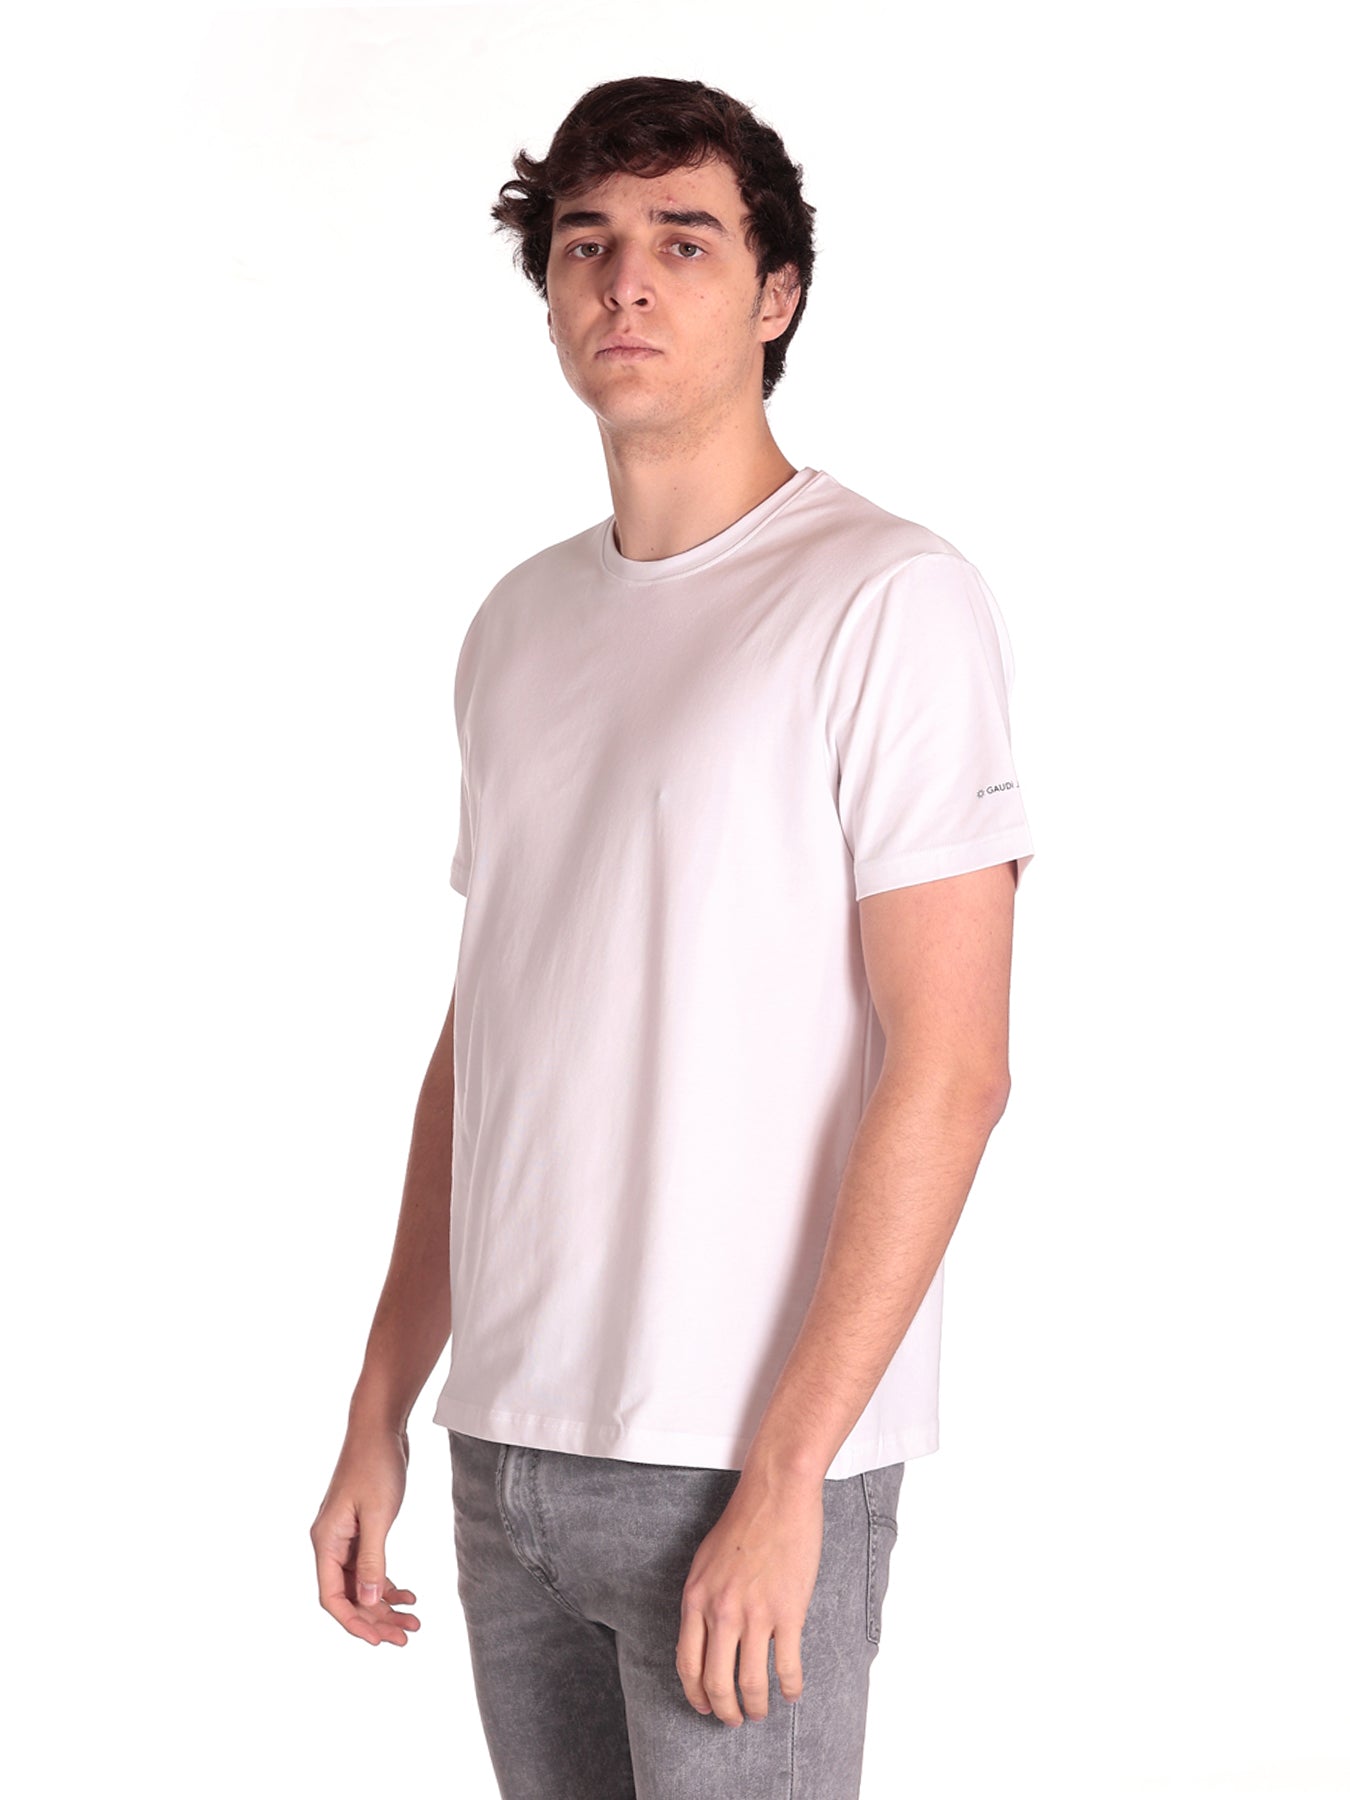 T-Shirt 311gu64118 White